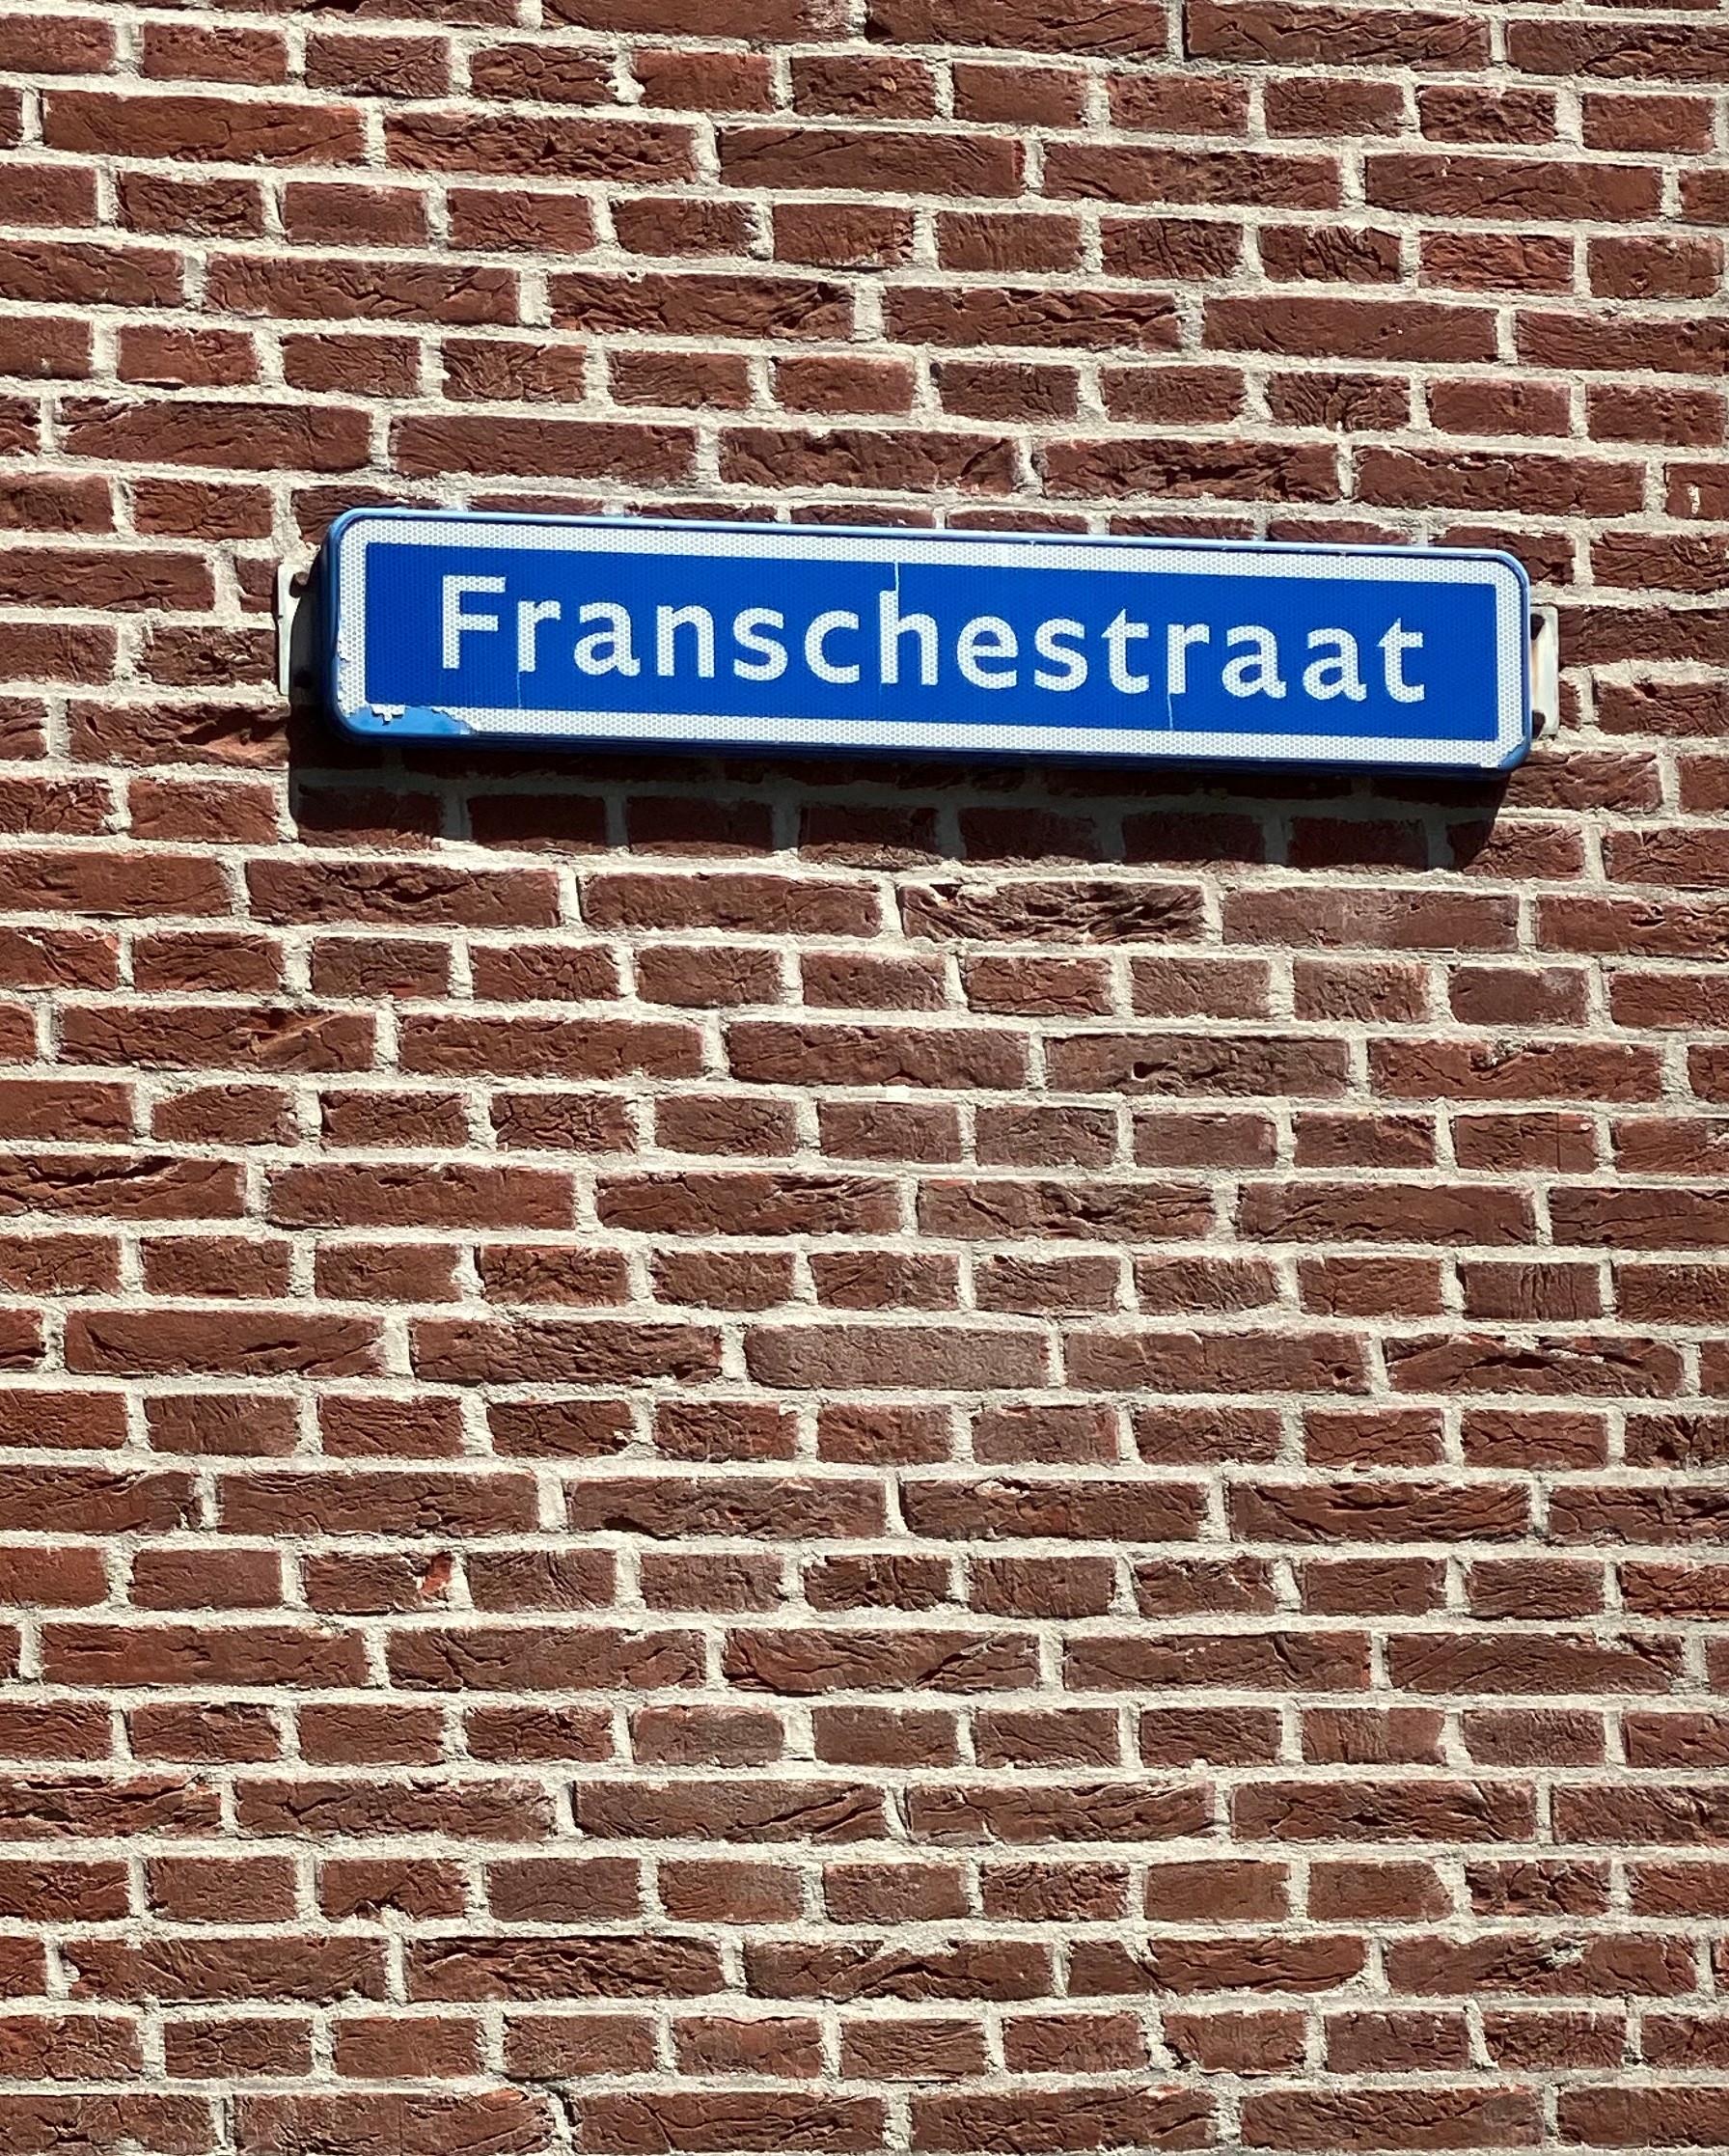 Franschestraat 21, 3231 AC Brielle, Nederland